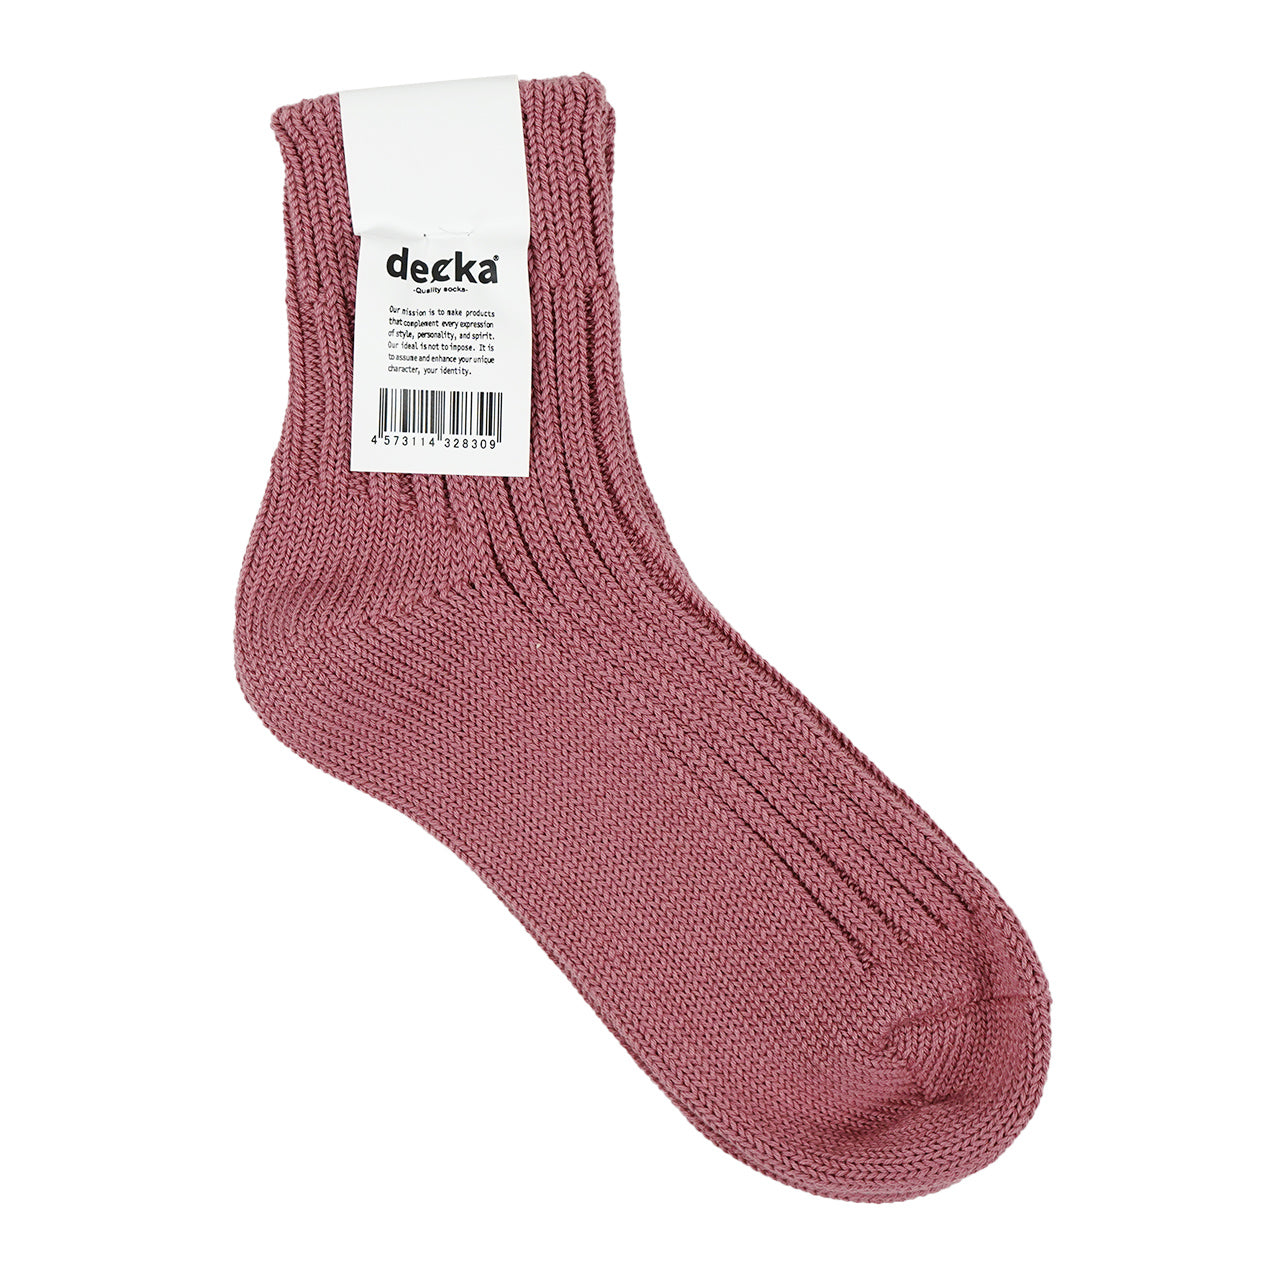 decka Quality socks デカクオリティソックス ローゲージ リブソックス ショートレングス Low Gauge Rib Socks Short Length 靴下  de-26 de-26-2【メール便可】